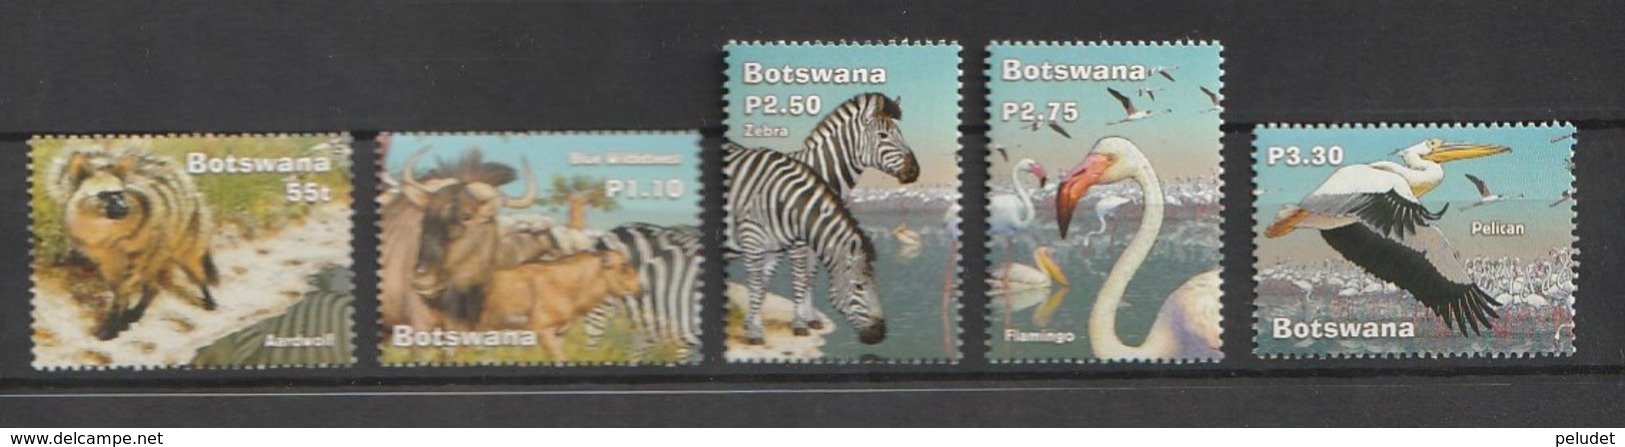 Bostwana 2002, Wetlands 5v ** Mi 766-70, Sn 761-65, Yt 902-06, Sg 994-98 - Botswana (1966-...)